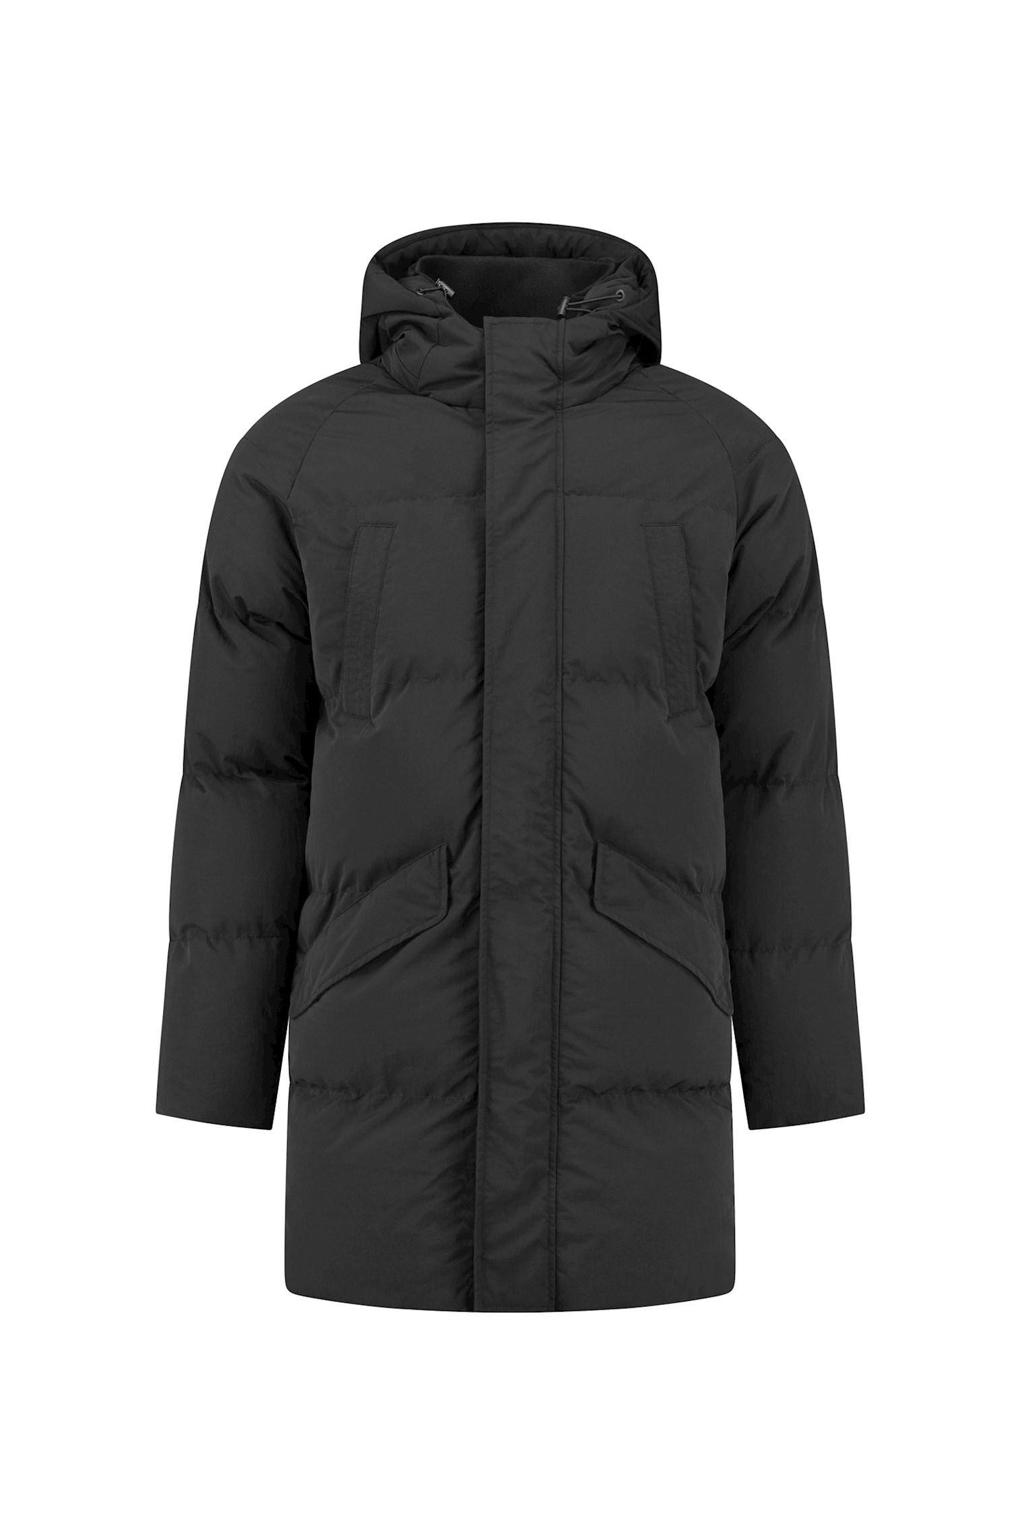 Zwarte heren Purewhite gewatteerde jas van nylon met lange mouwen, capuchon en rits- en drukknoopsluiting